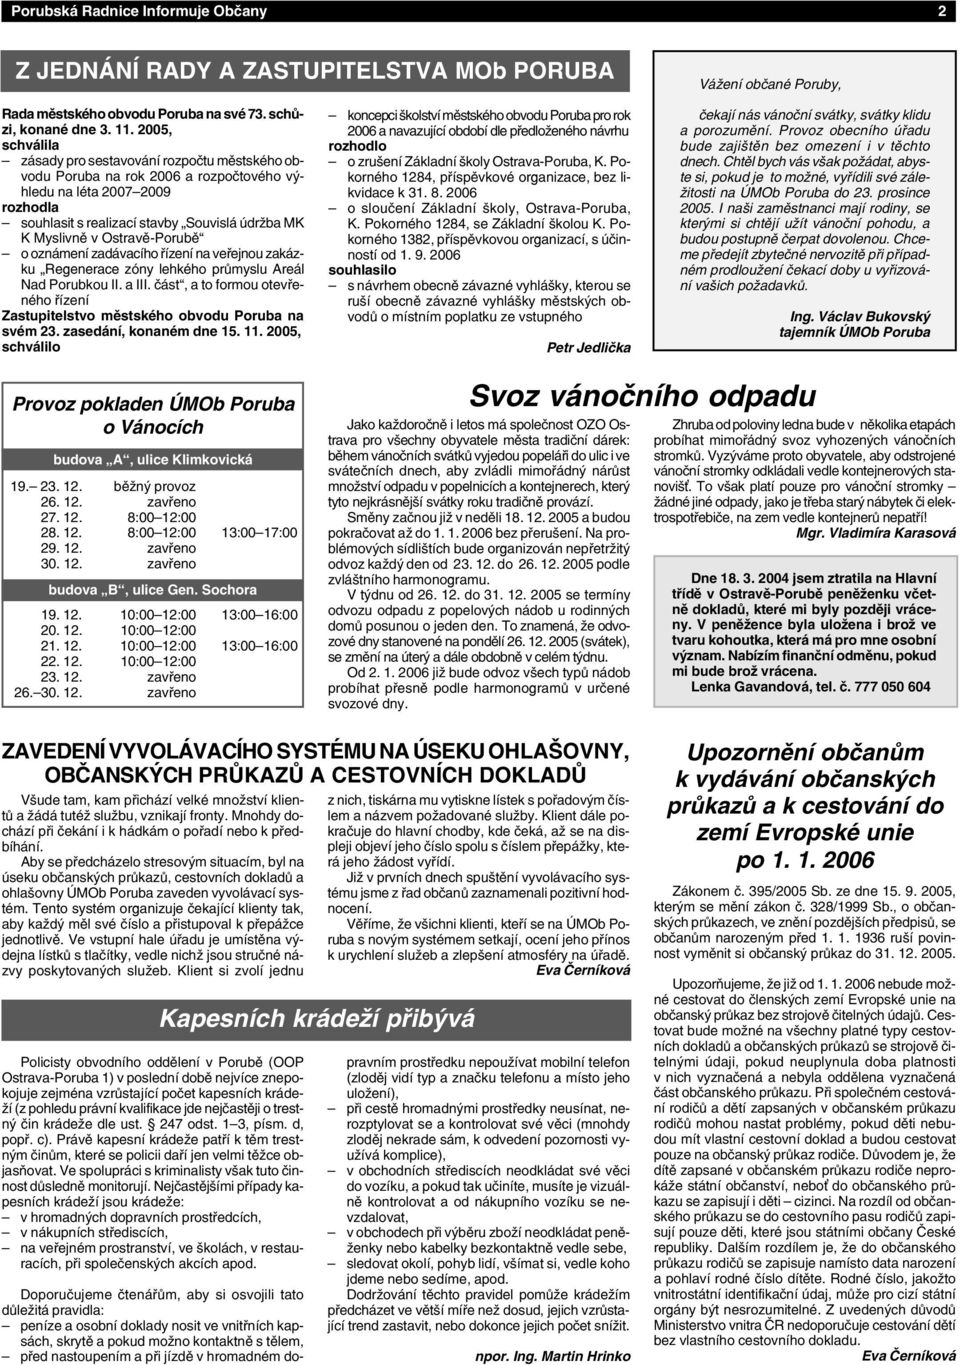 Ostravě-Porubě o oznámení zadávacího řízení na veřejnou zakázku Regenerace zóny lehkého průmyslu Areál Nad Porubkou II. a III.